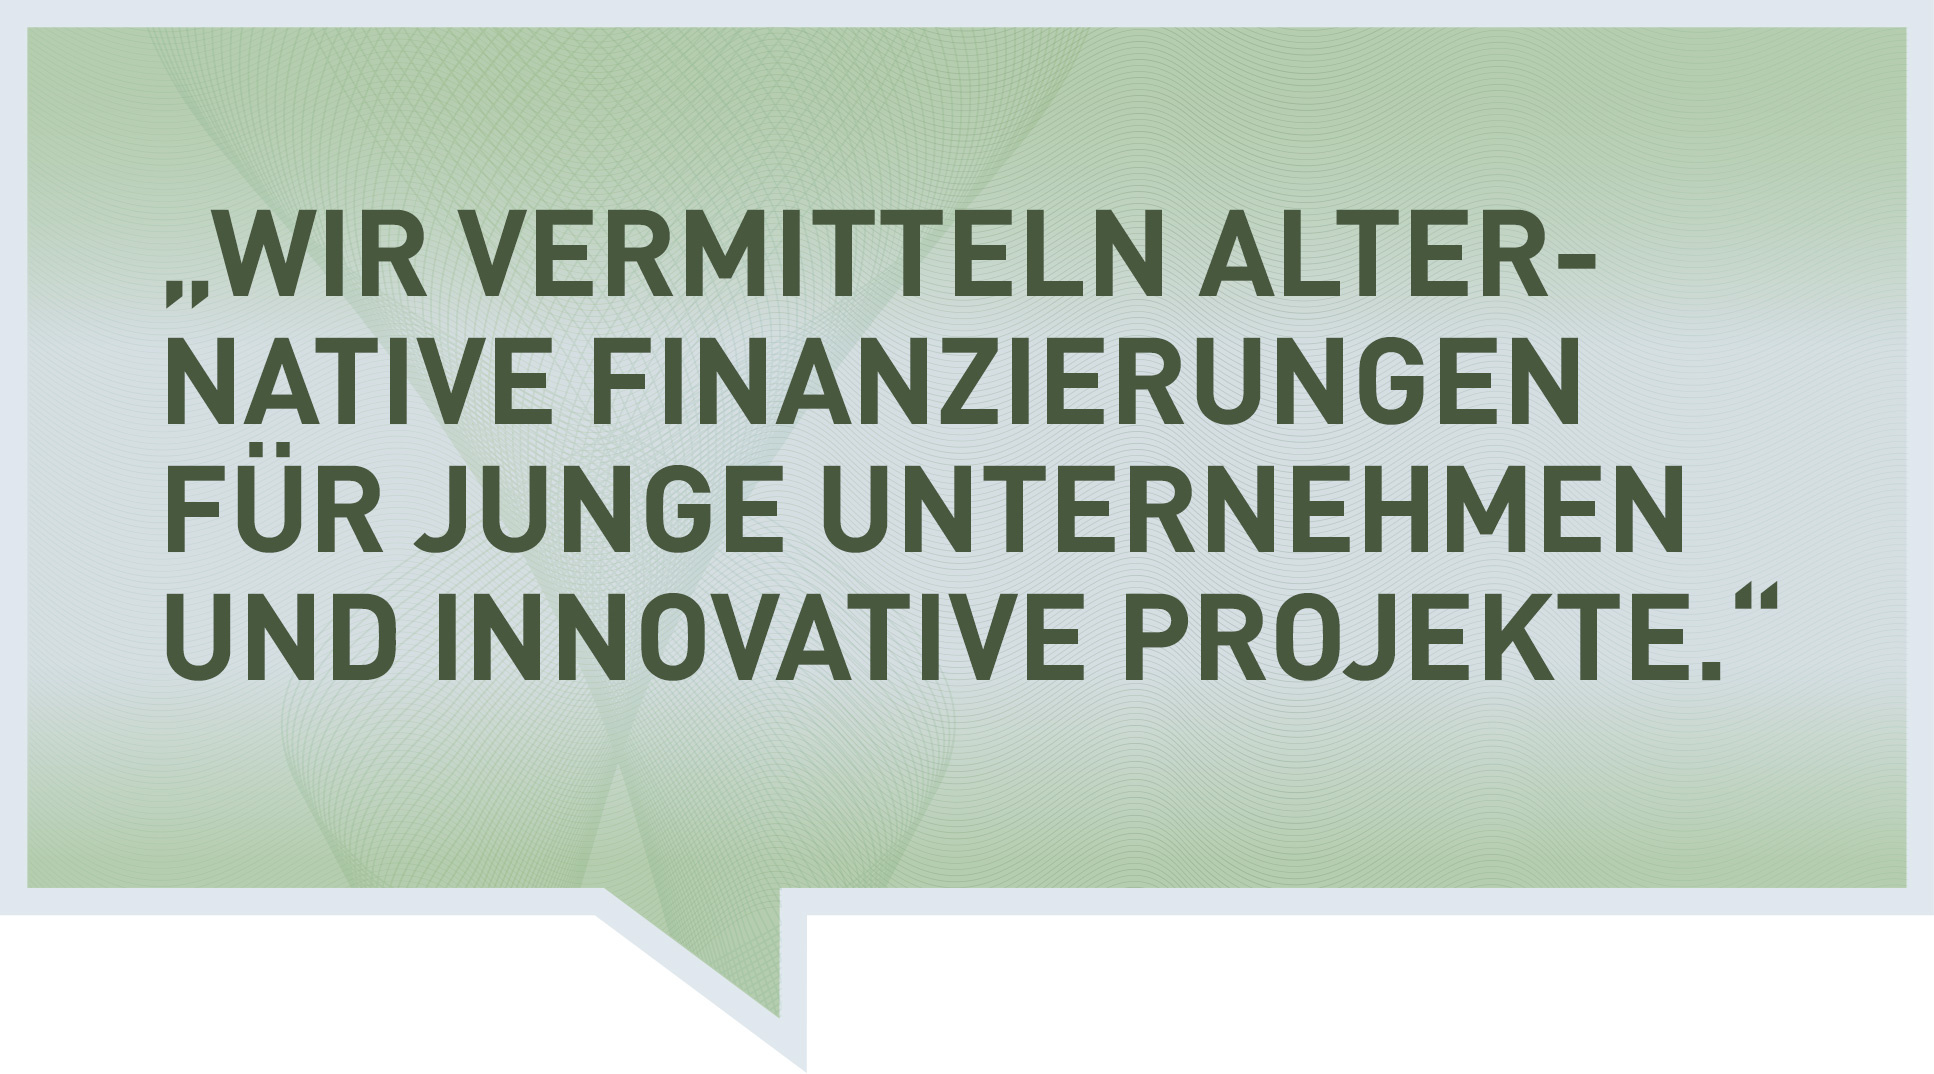 Wir vermitteln alternative Finanzierungen für junge Unternehmen und innovative Projekte.